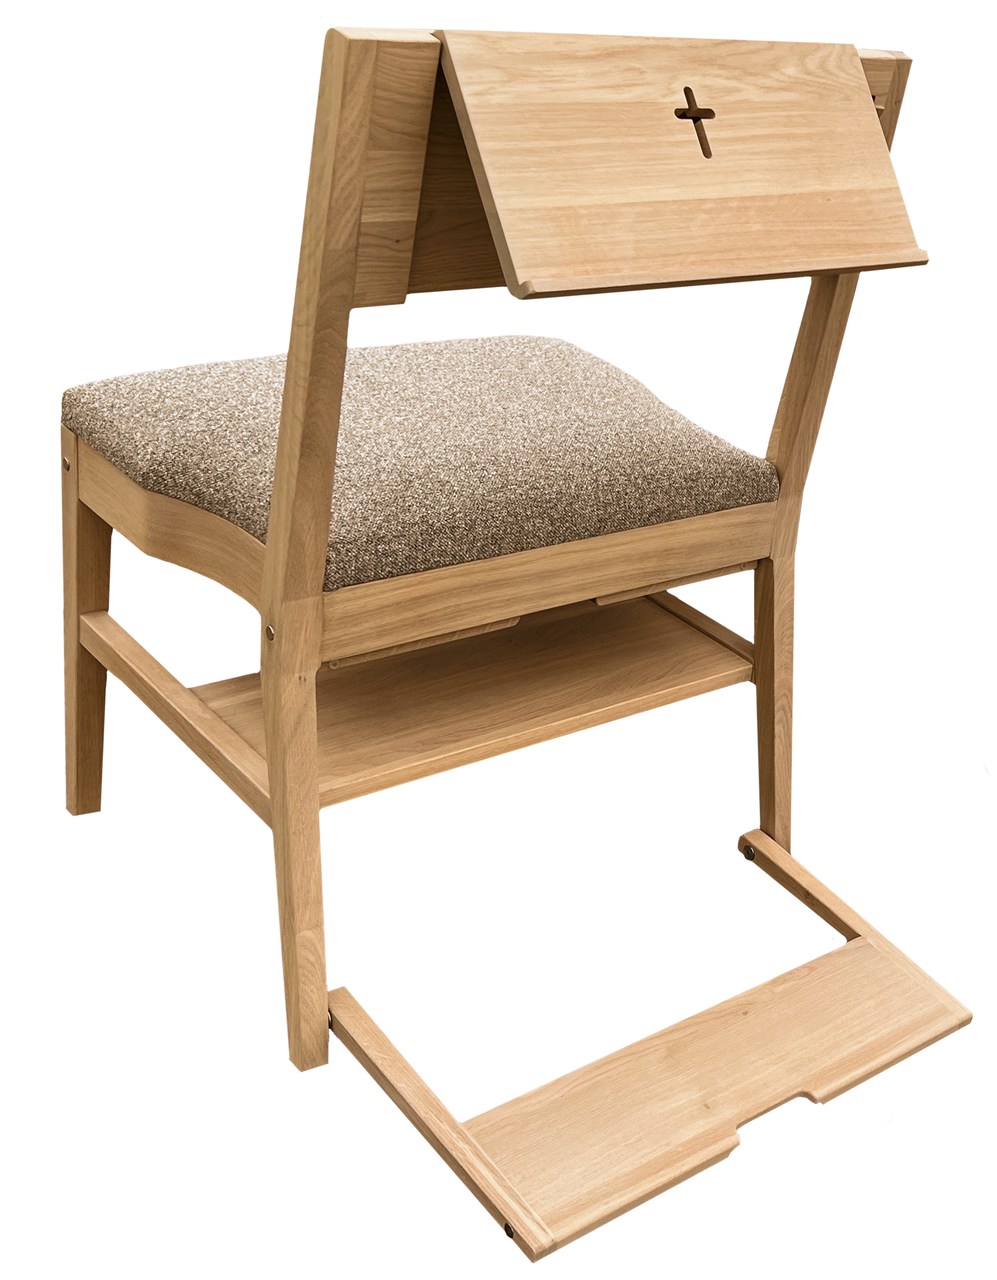 Hrastov cerkveni stol ZOE s celotnim naborom dodatkov — pult, kljuka, klečalo, priključni sistem, polička pod sedežem in sedežno oblazinjenje